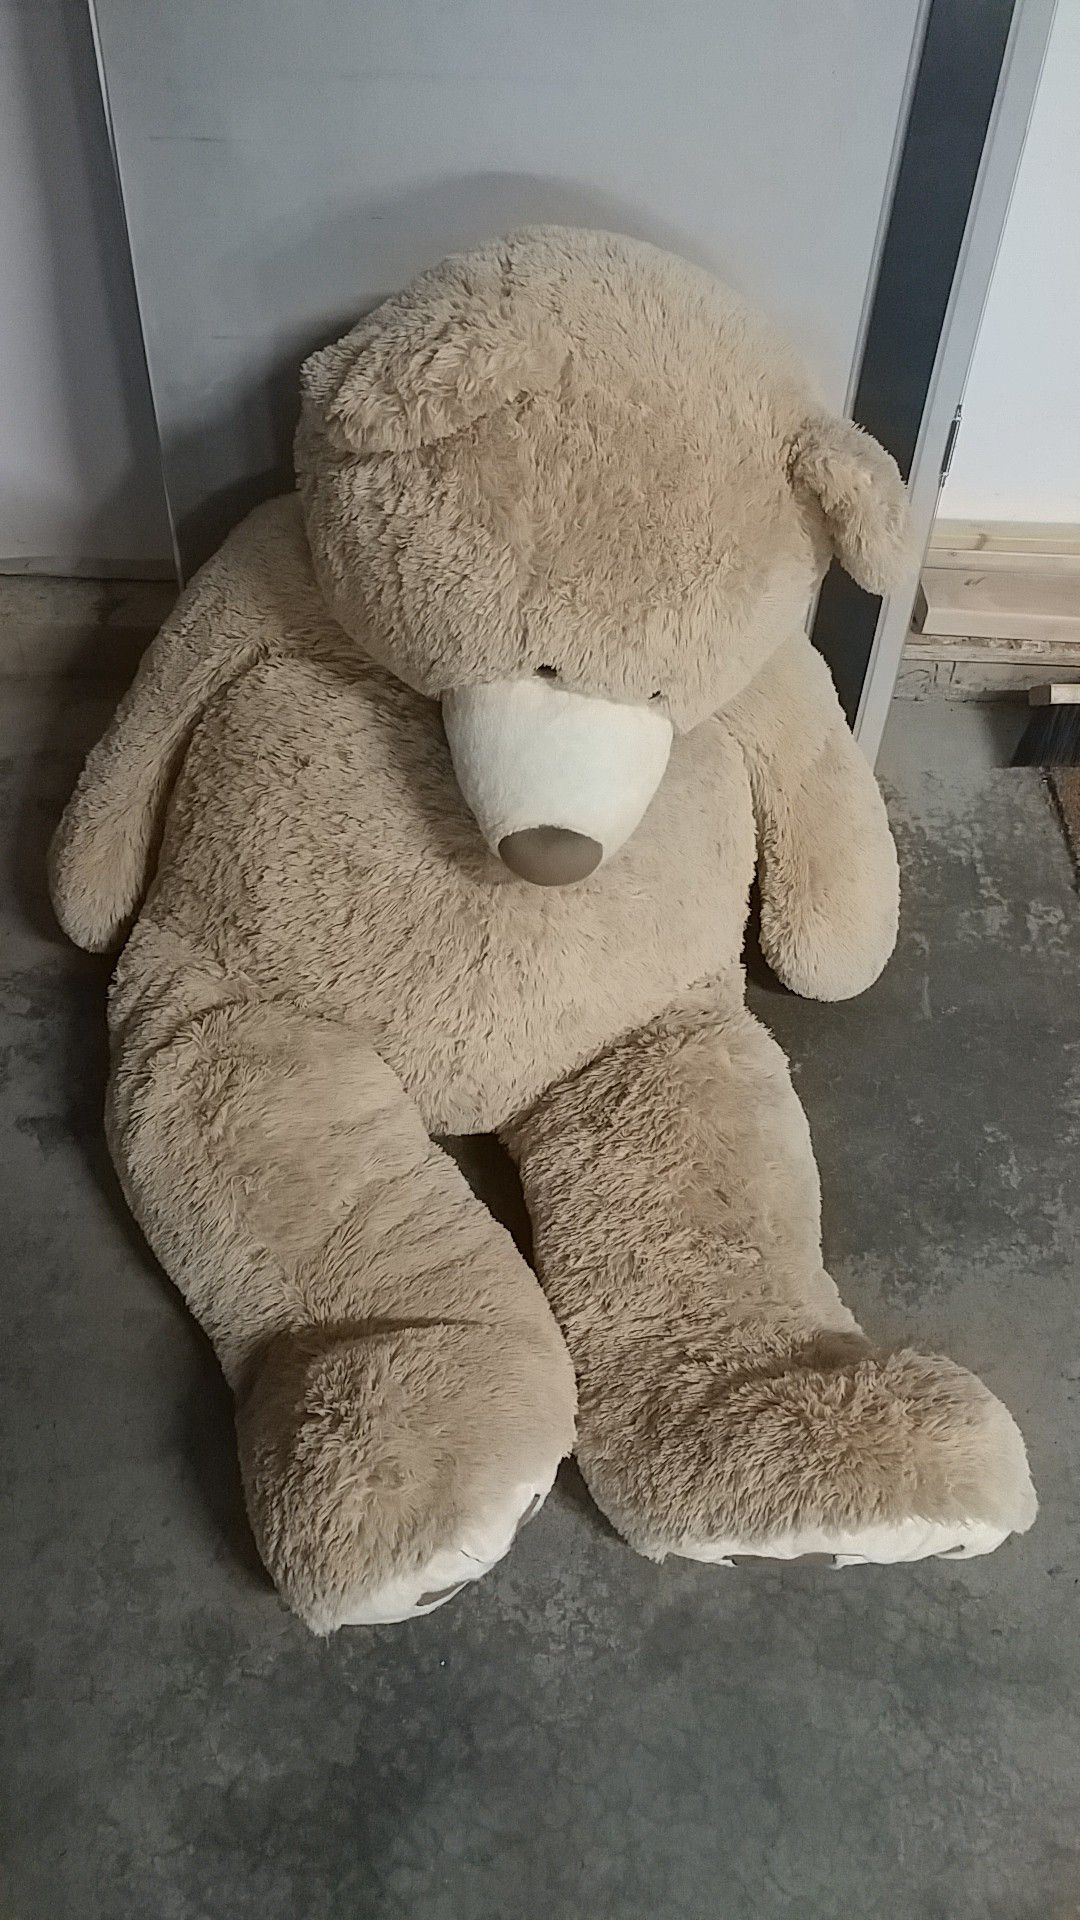 Giant stuffed teddy bear